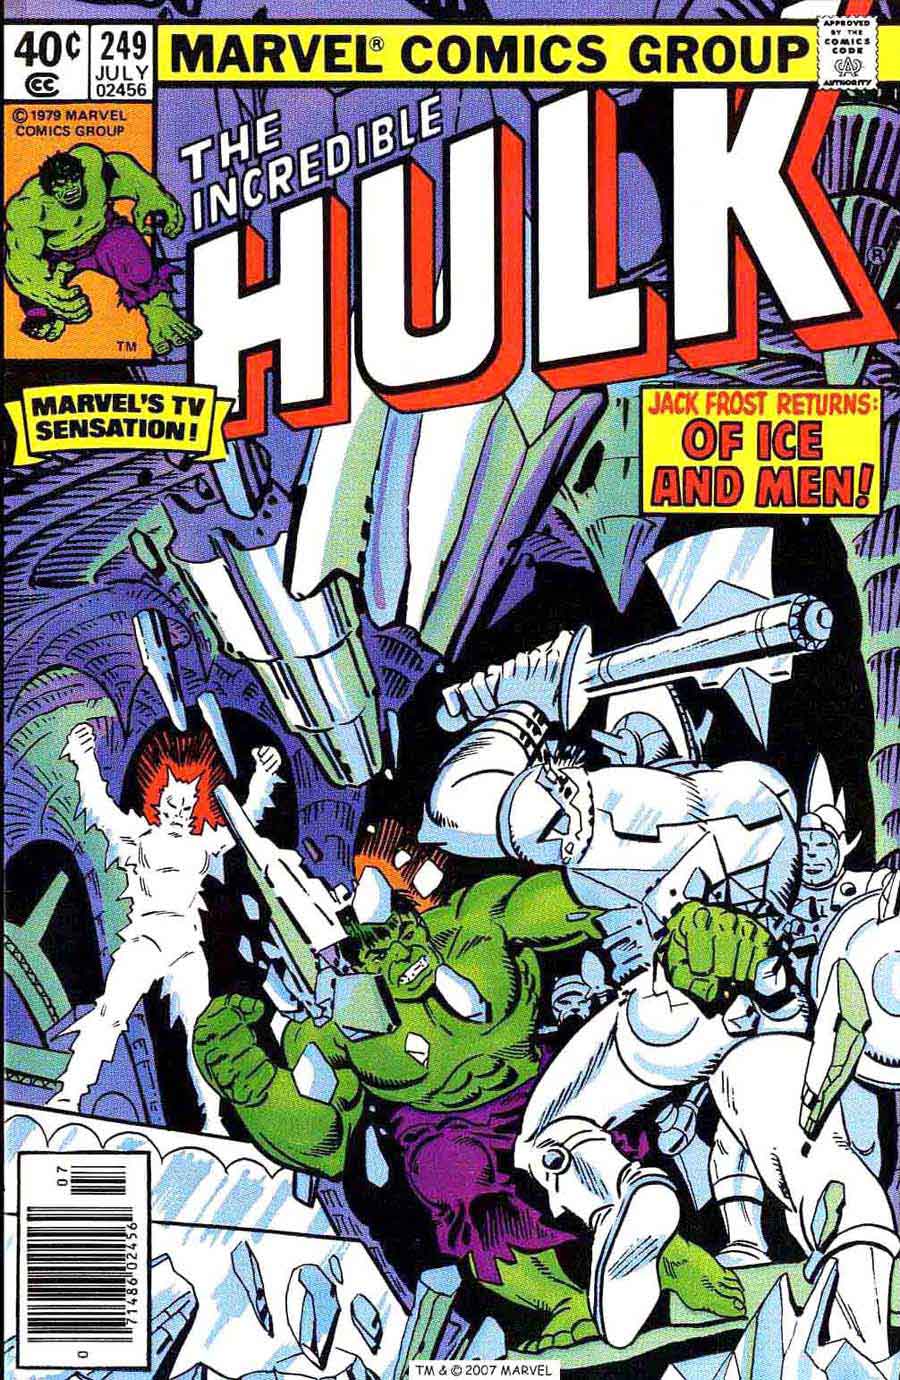 Incredible Hulk v2 #249 marvel comic book cover art by Steve Ditko